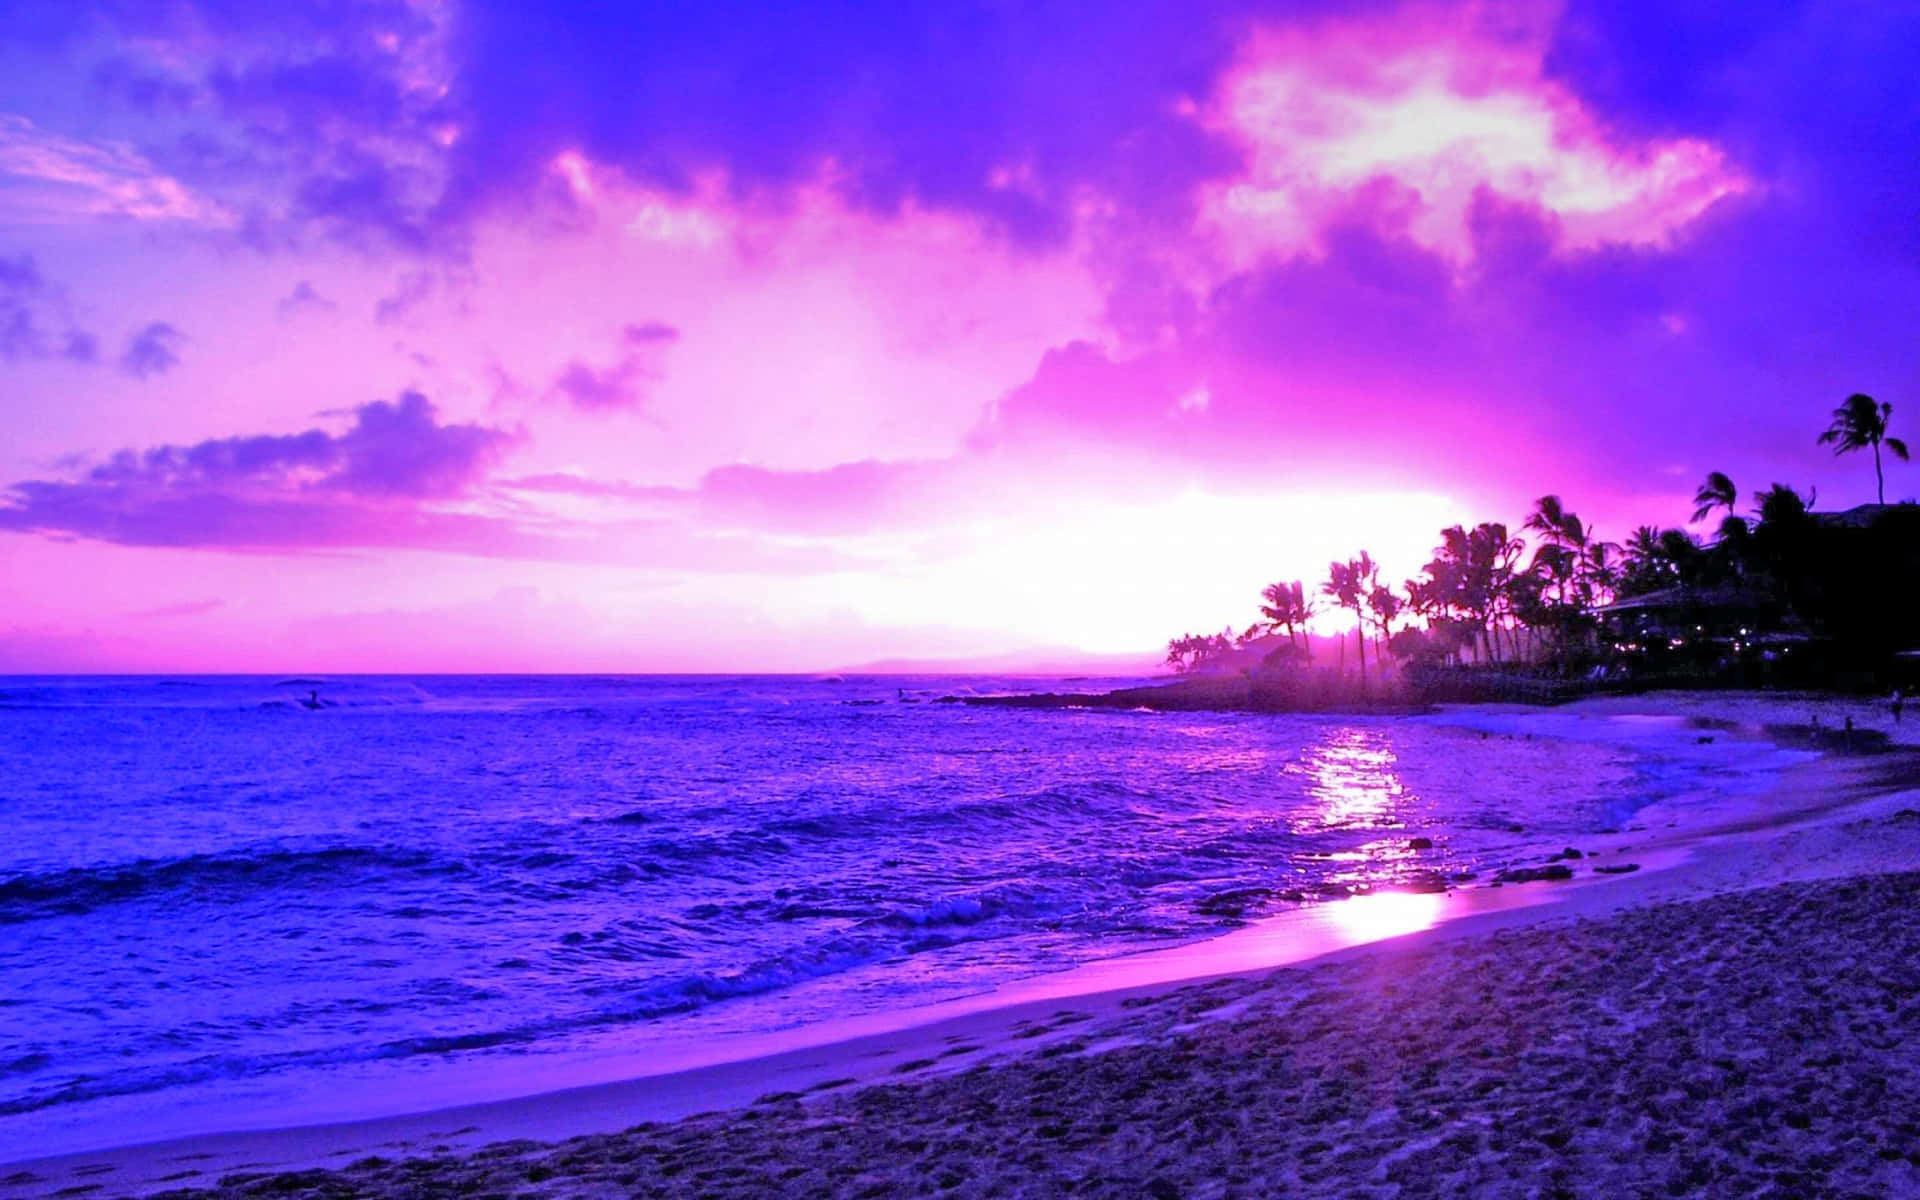 Apreciala Belleza De La Naturaleza Con Una Puesta De Sol En La Playa.